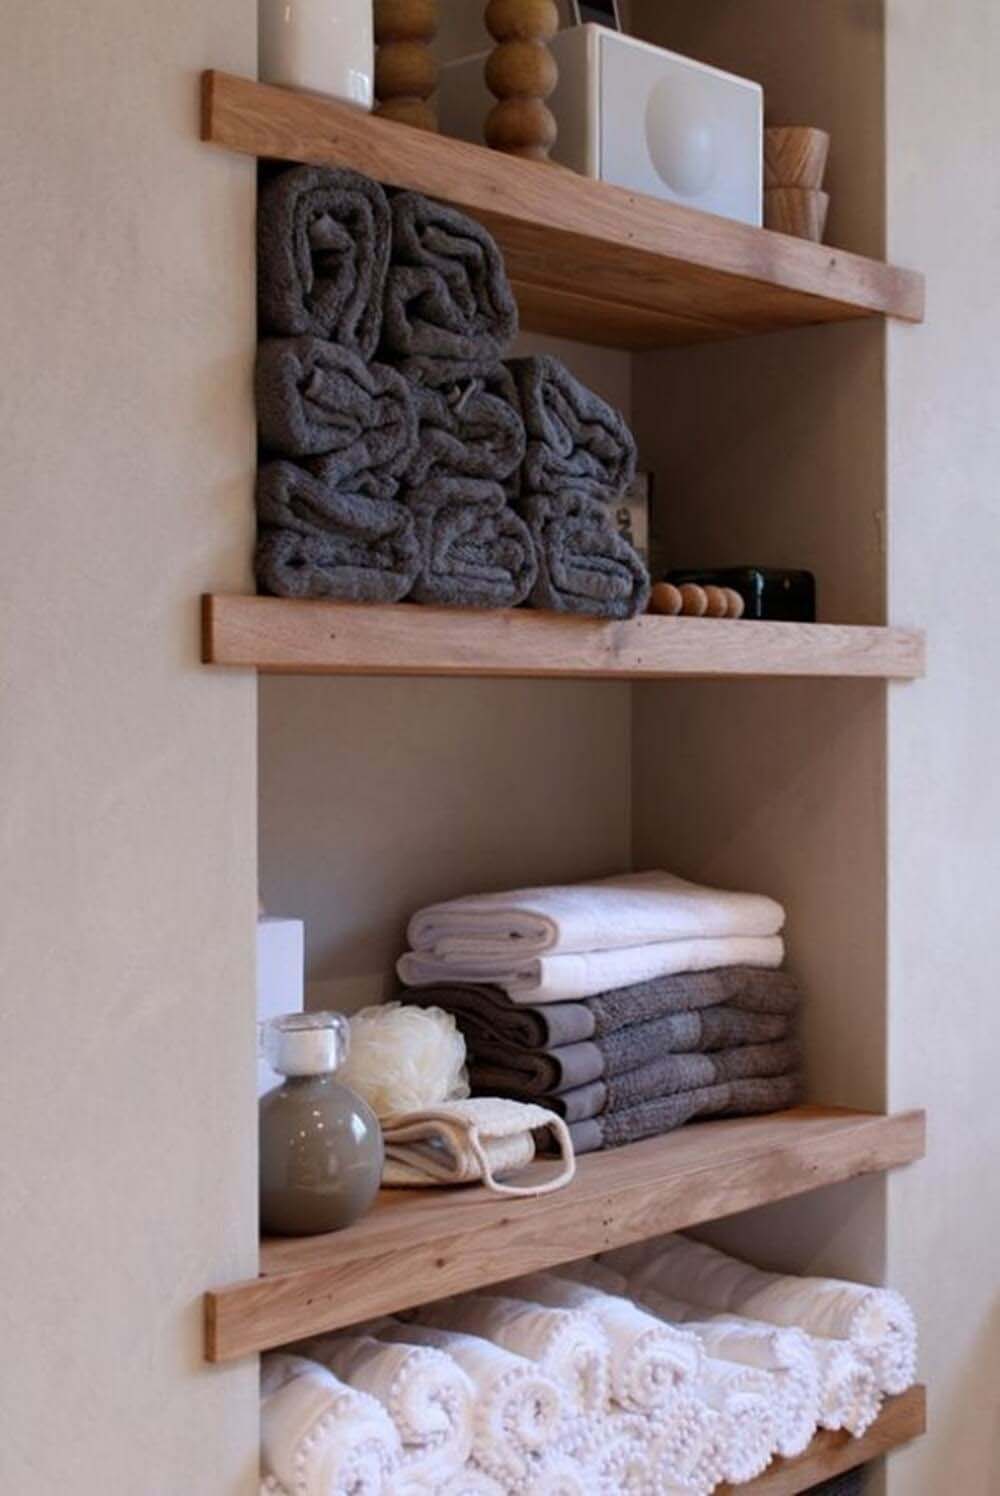 Built-in Wooden Shelves